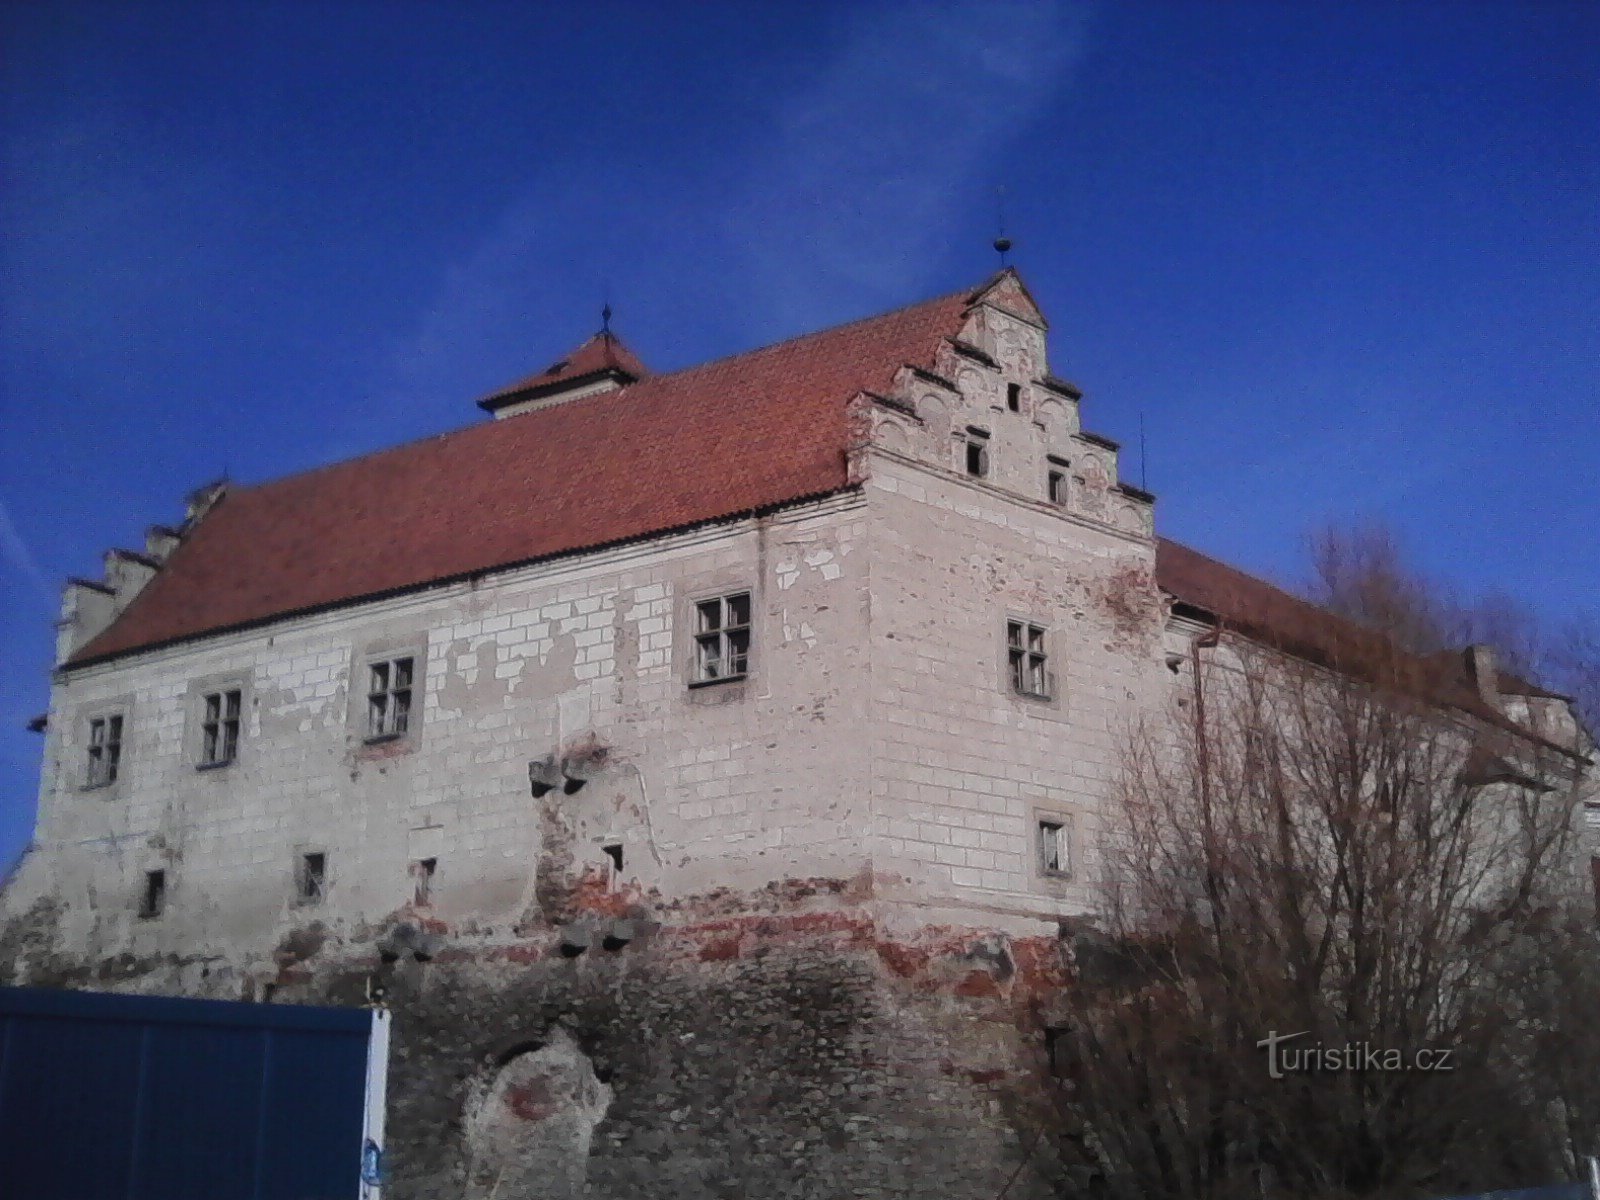 1. チェルヴェナー・レチツァの城。 2世紀後半頃の城跡。 要塞。 13時